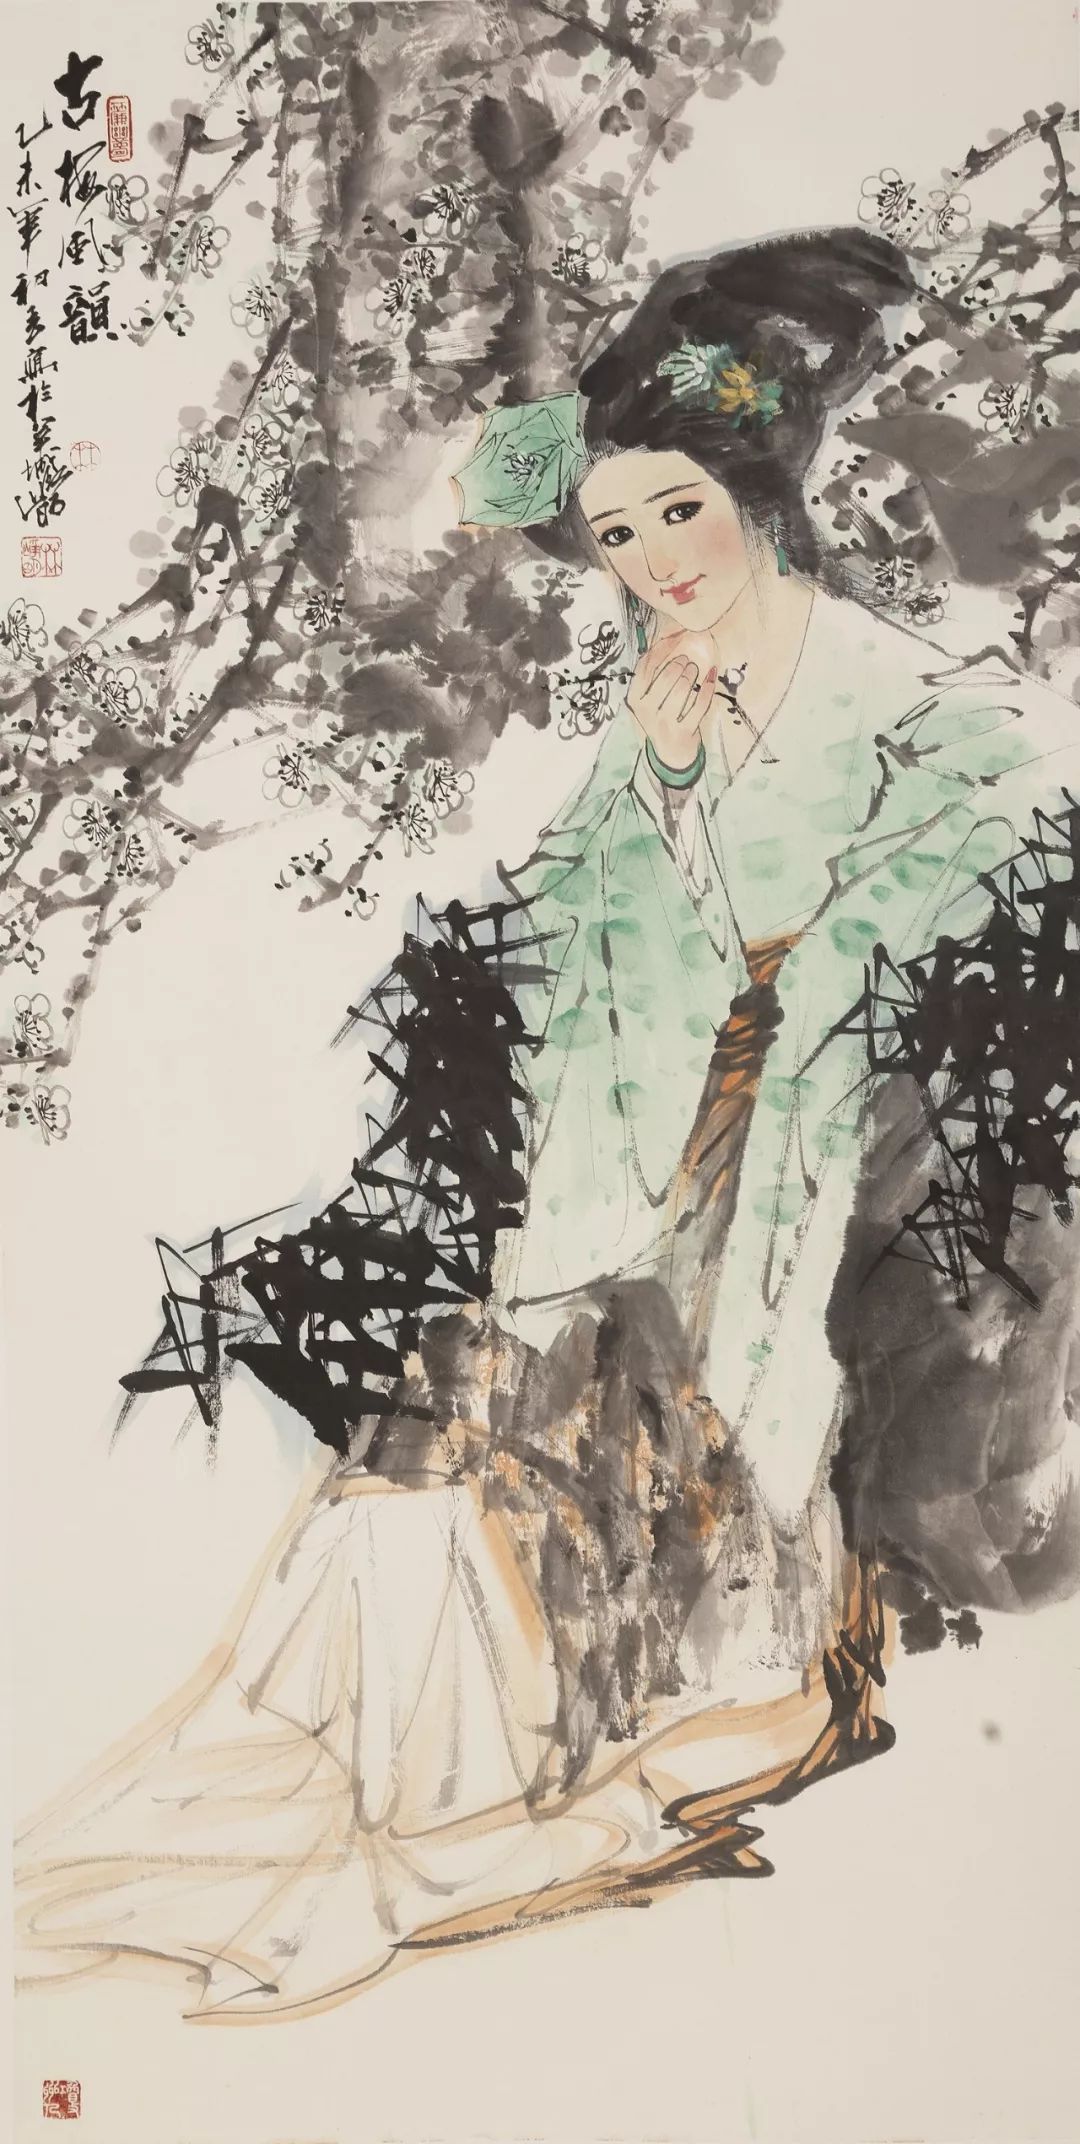 春风大雅旅日画家林峥明国画展5月11日10:30在广州二合一艺术馆开幕